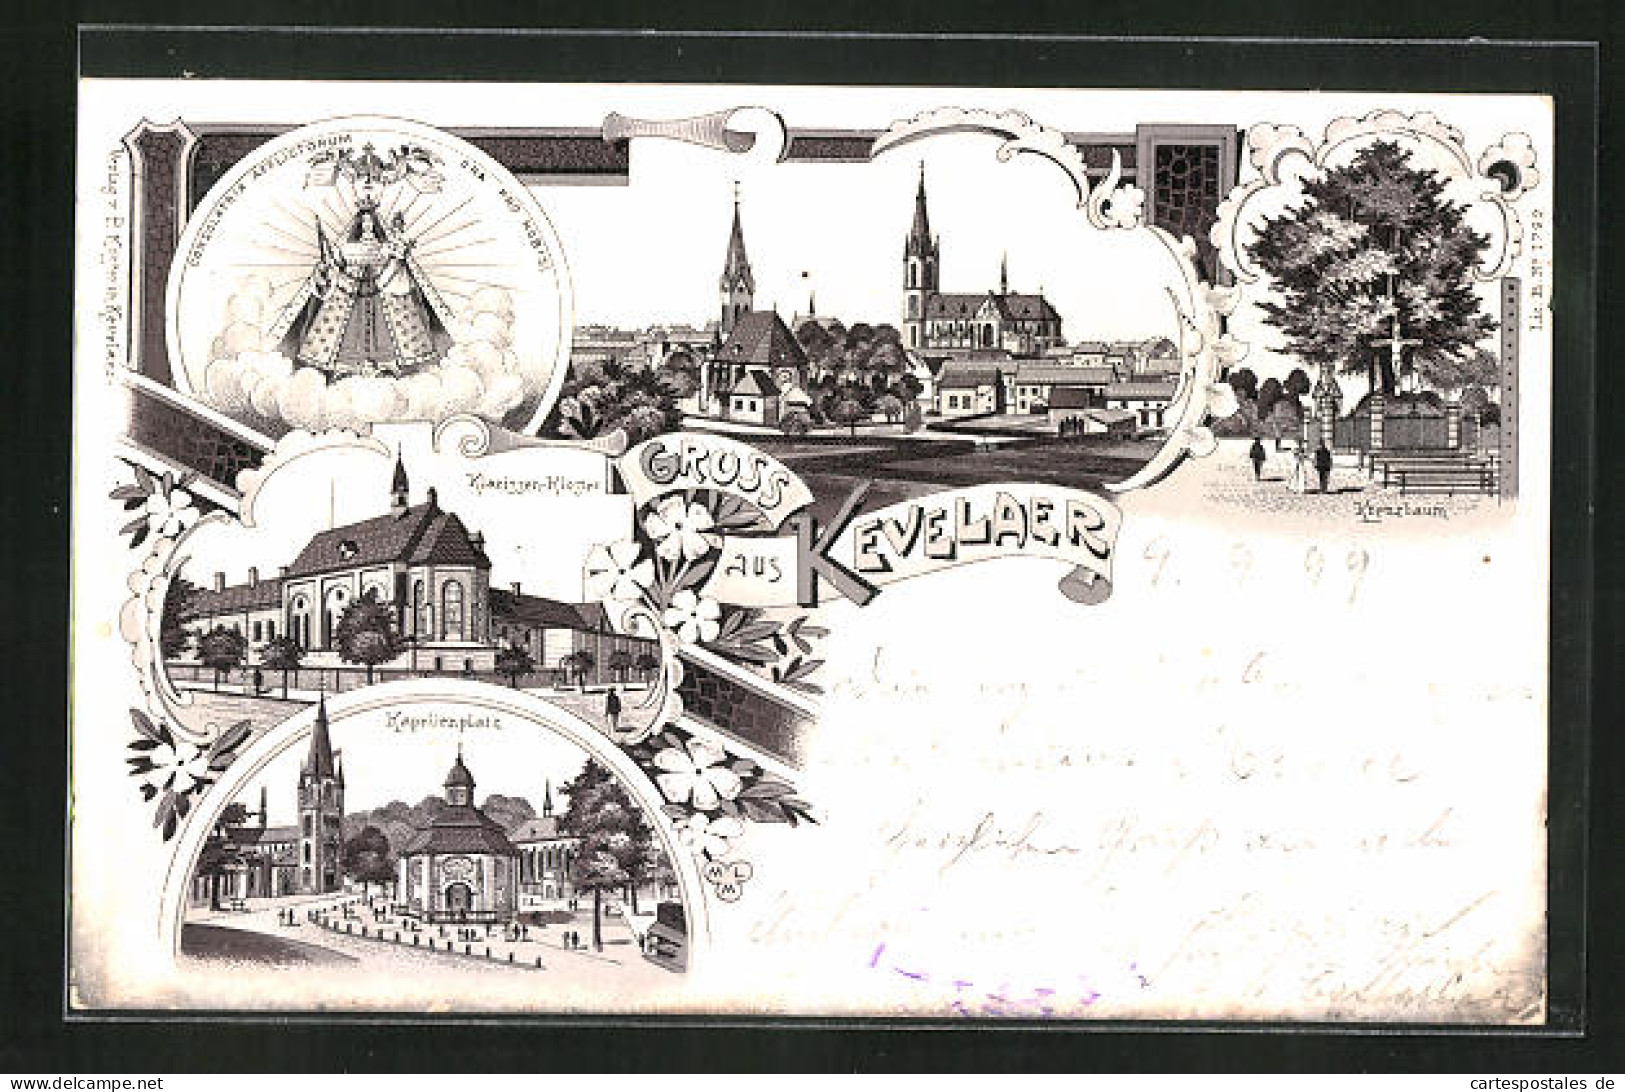 Lithographie Kevelaer, Kreuzbaum, Kapellenplatz, Klarissen-Kloster  - Kevelaer